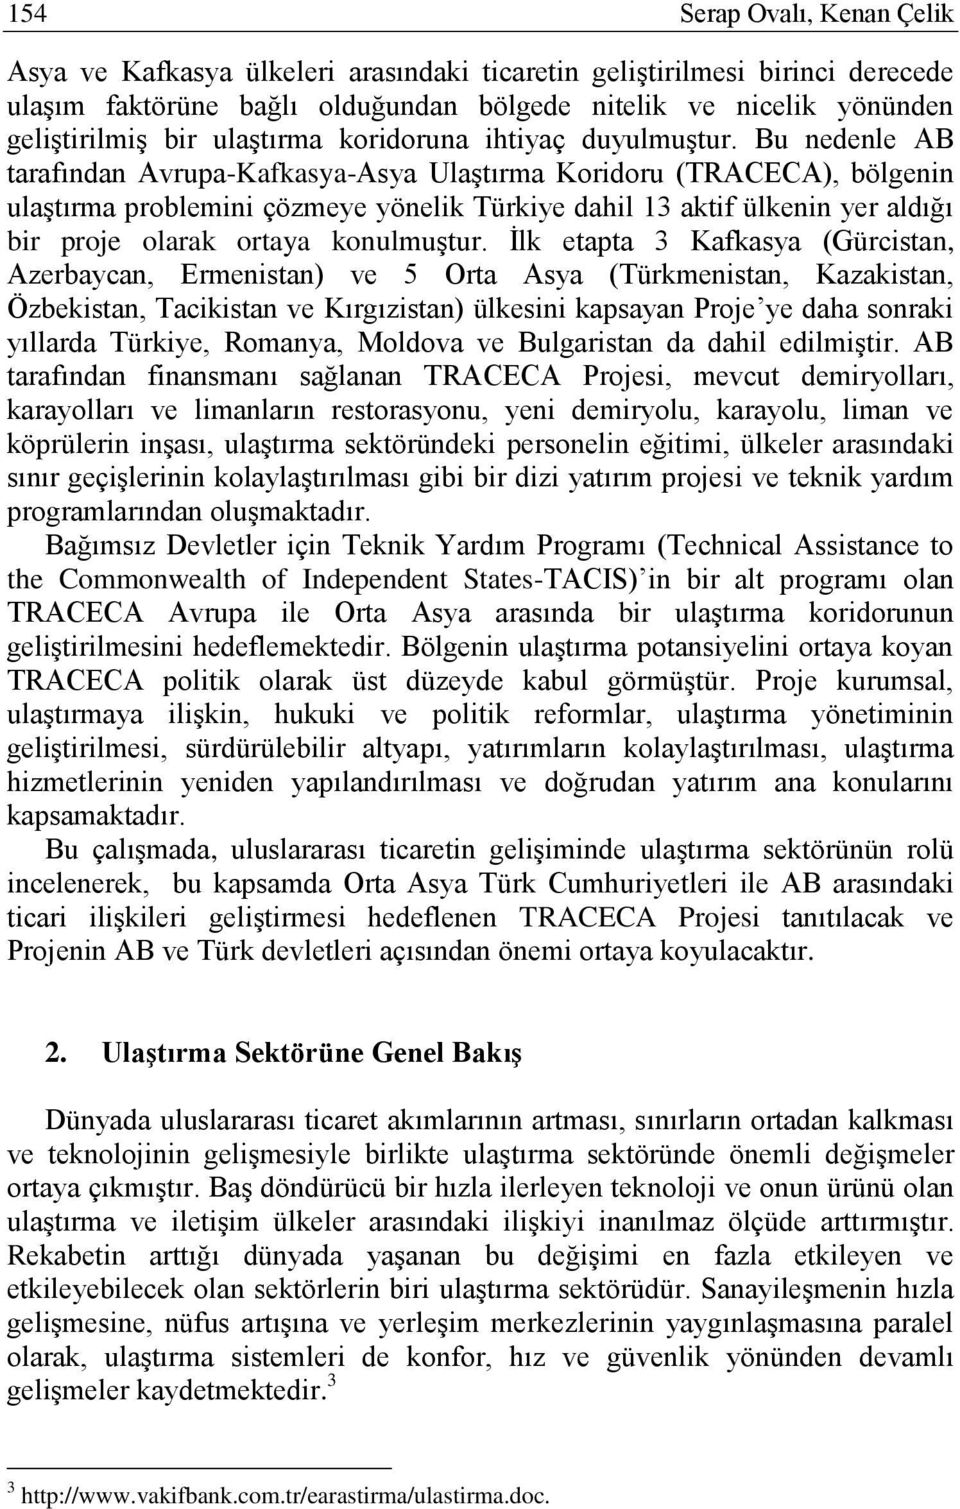 Bu nedenle AB tarafından Avrupa-Kafkasya-Asya UlaĢtırma Koridoru (TRACECA), bölgenin ulaģtırma problemini çözmeye yönelik Türkiye dahil 13 aktif ülkenin yer aldığı bir proje olarak ortaya konulmuģtur.